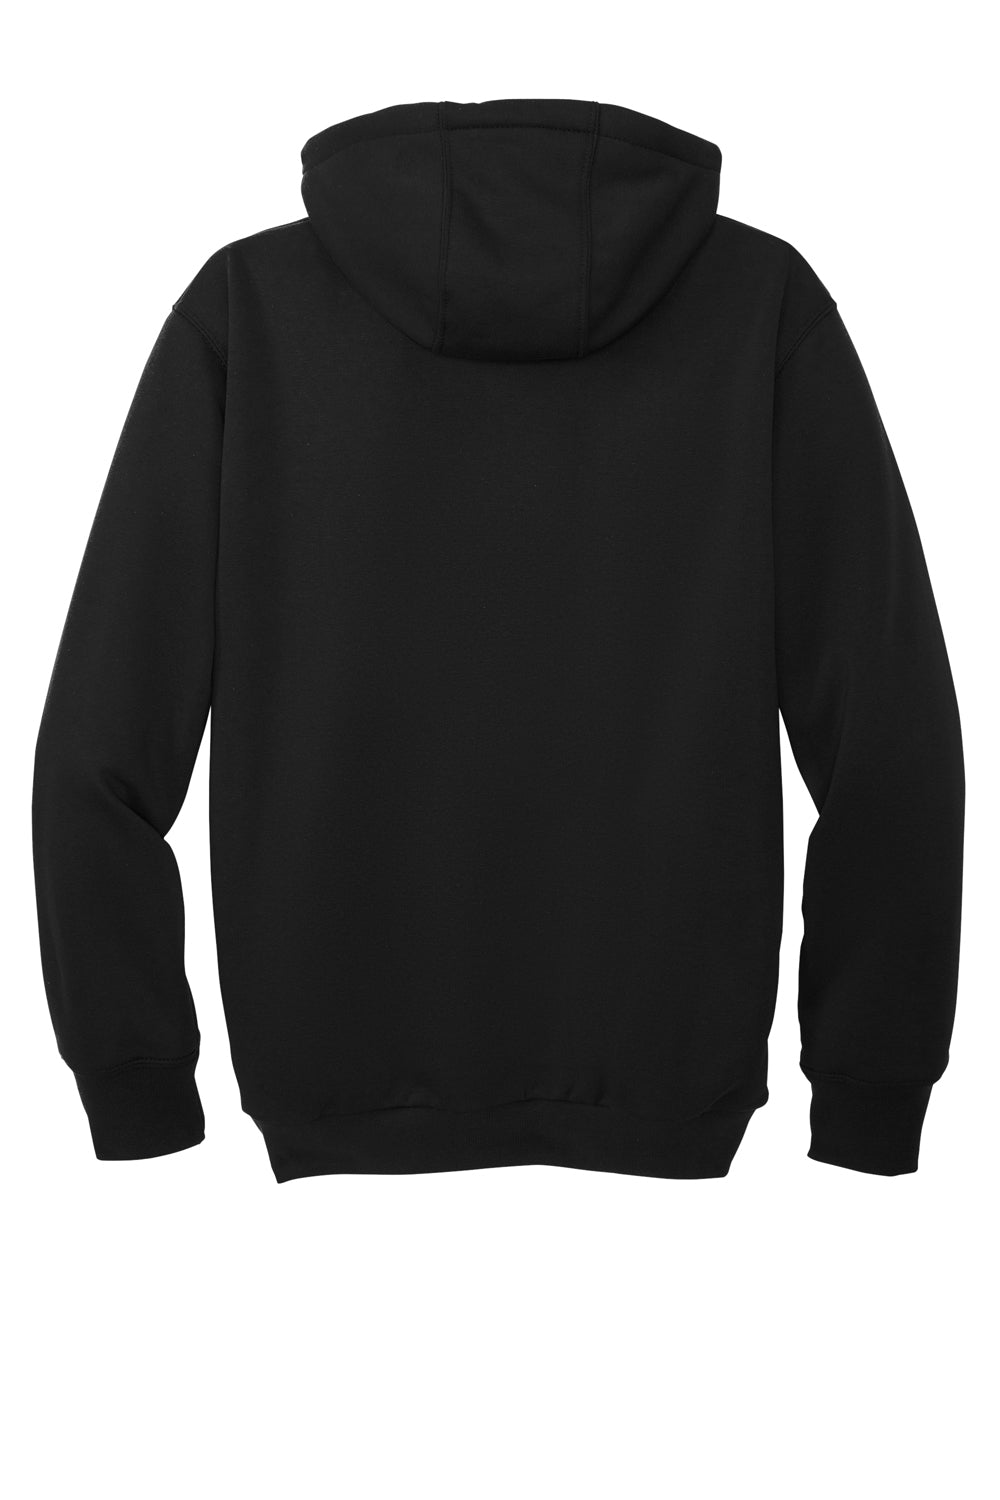 Carhartt CT104078 Mens Water Resistant Thermal Lined Full Zip Hooded Sweatshirt Hoodie Black Flat Back